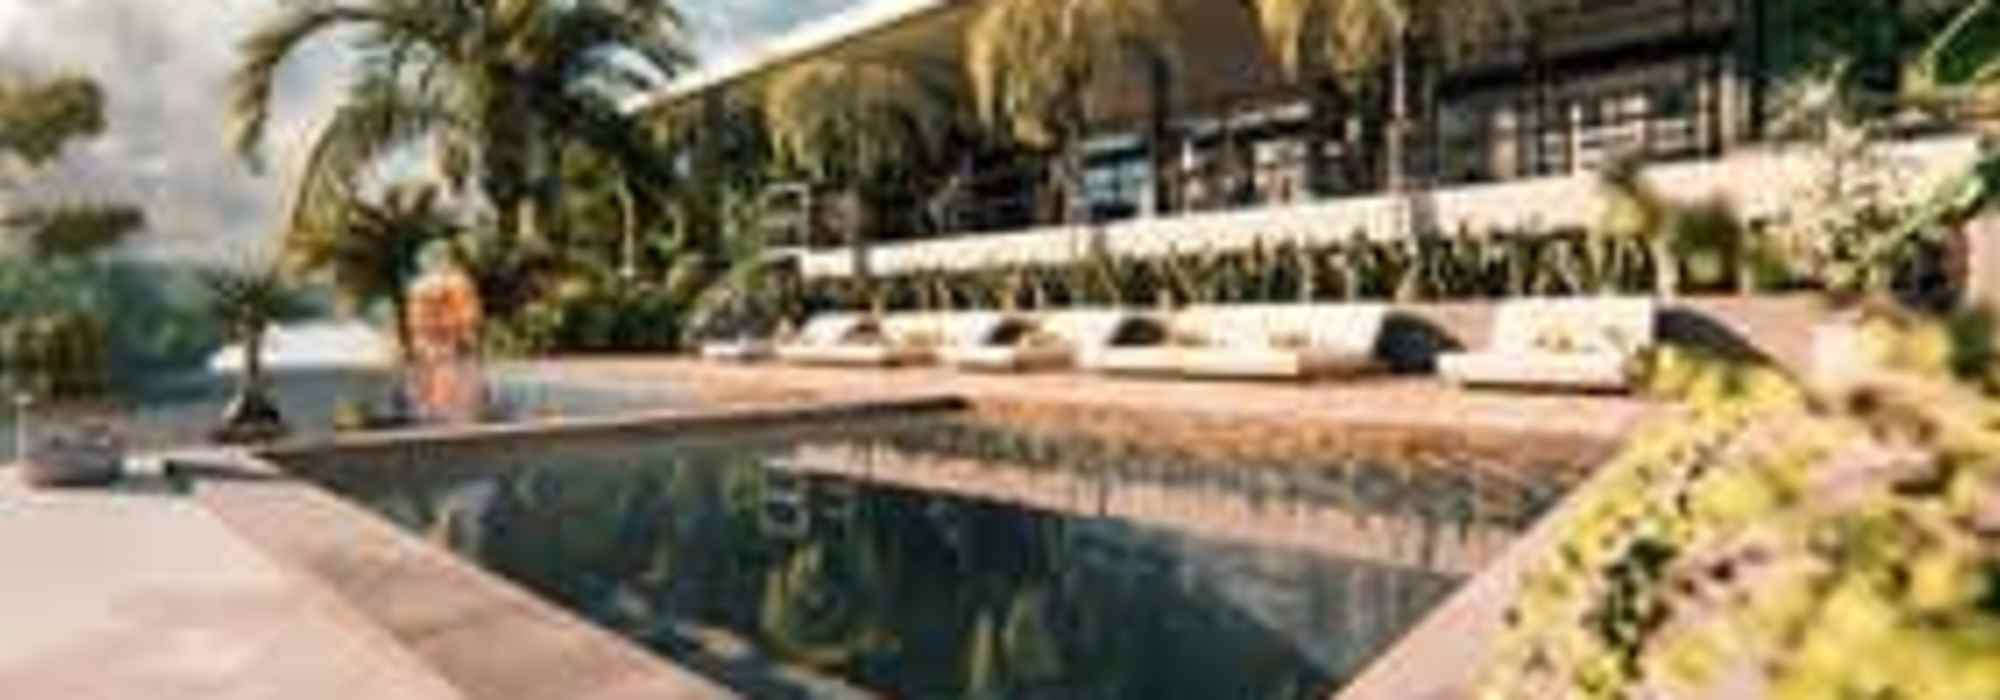 Oportunidad Casa Nueva Estrenar Condo Bali Wellness Guachipelin 3 Hab